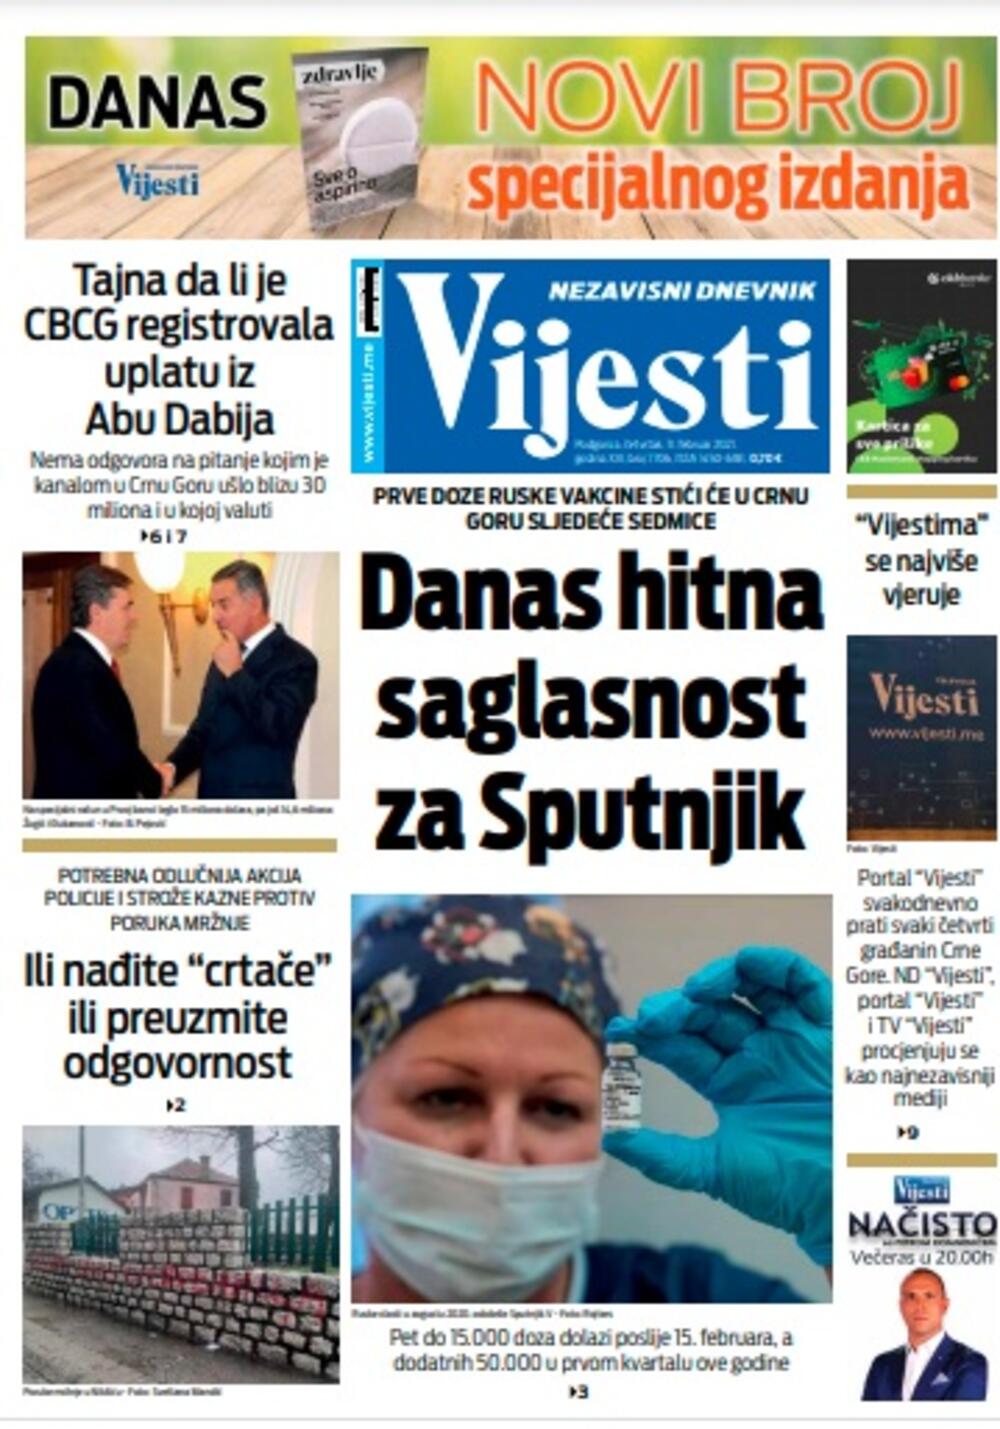 Naslovna strana "Vijesti" za četvrtak 11. februar 2021. godine, Foto: Vijesti